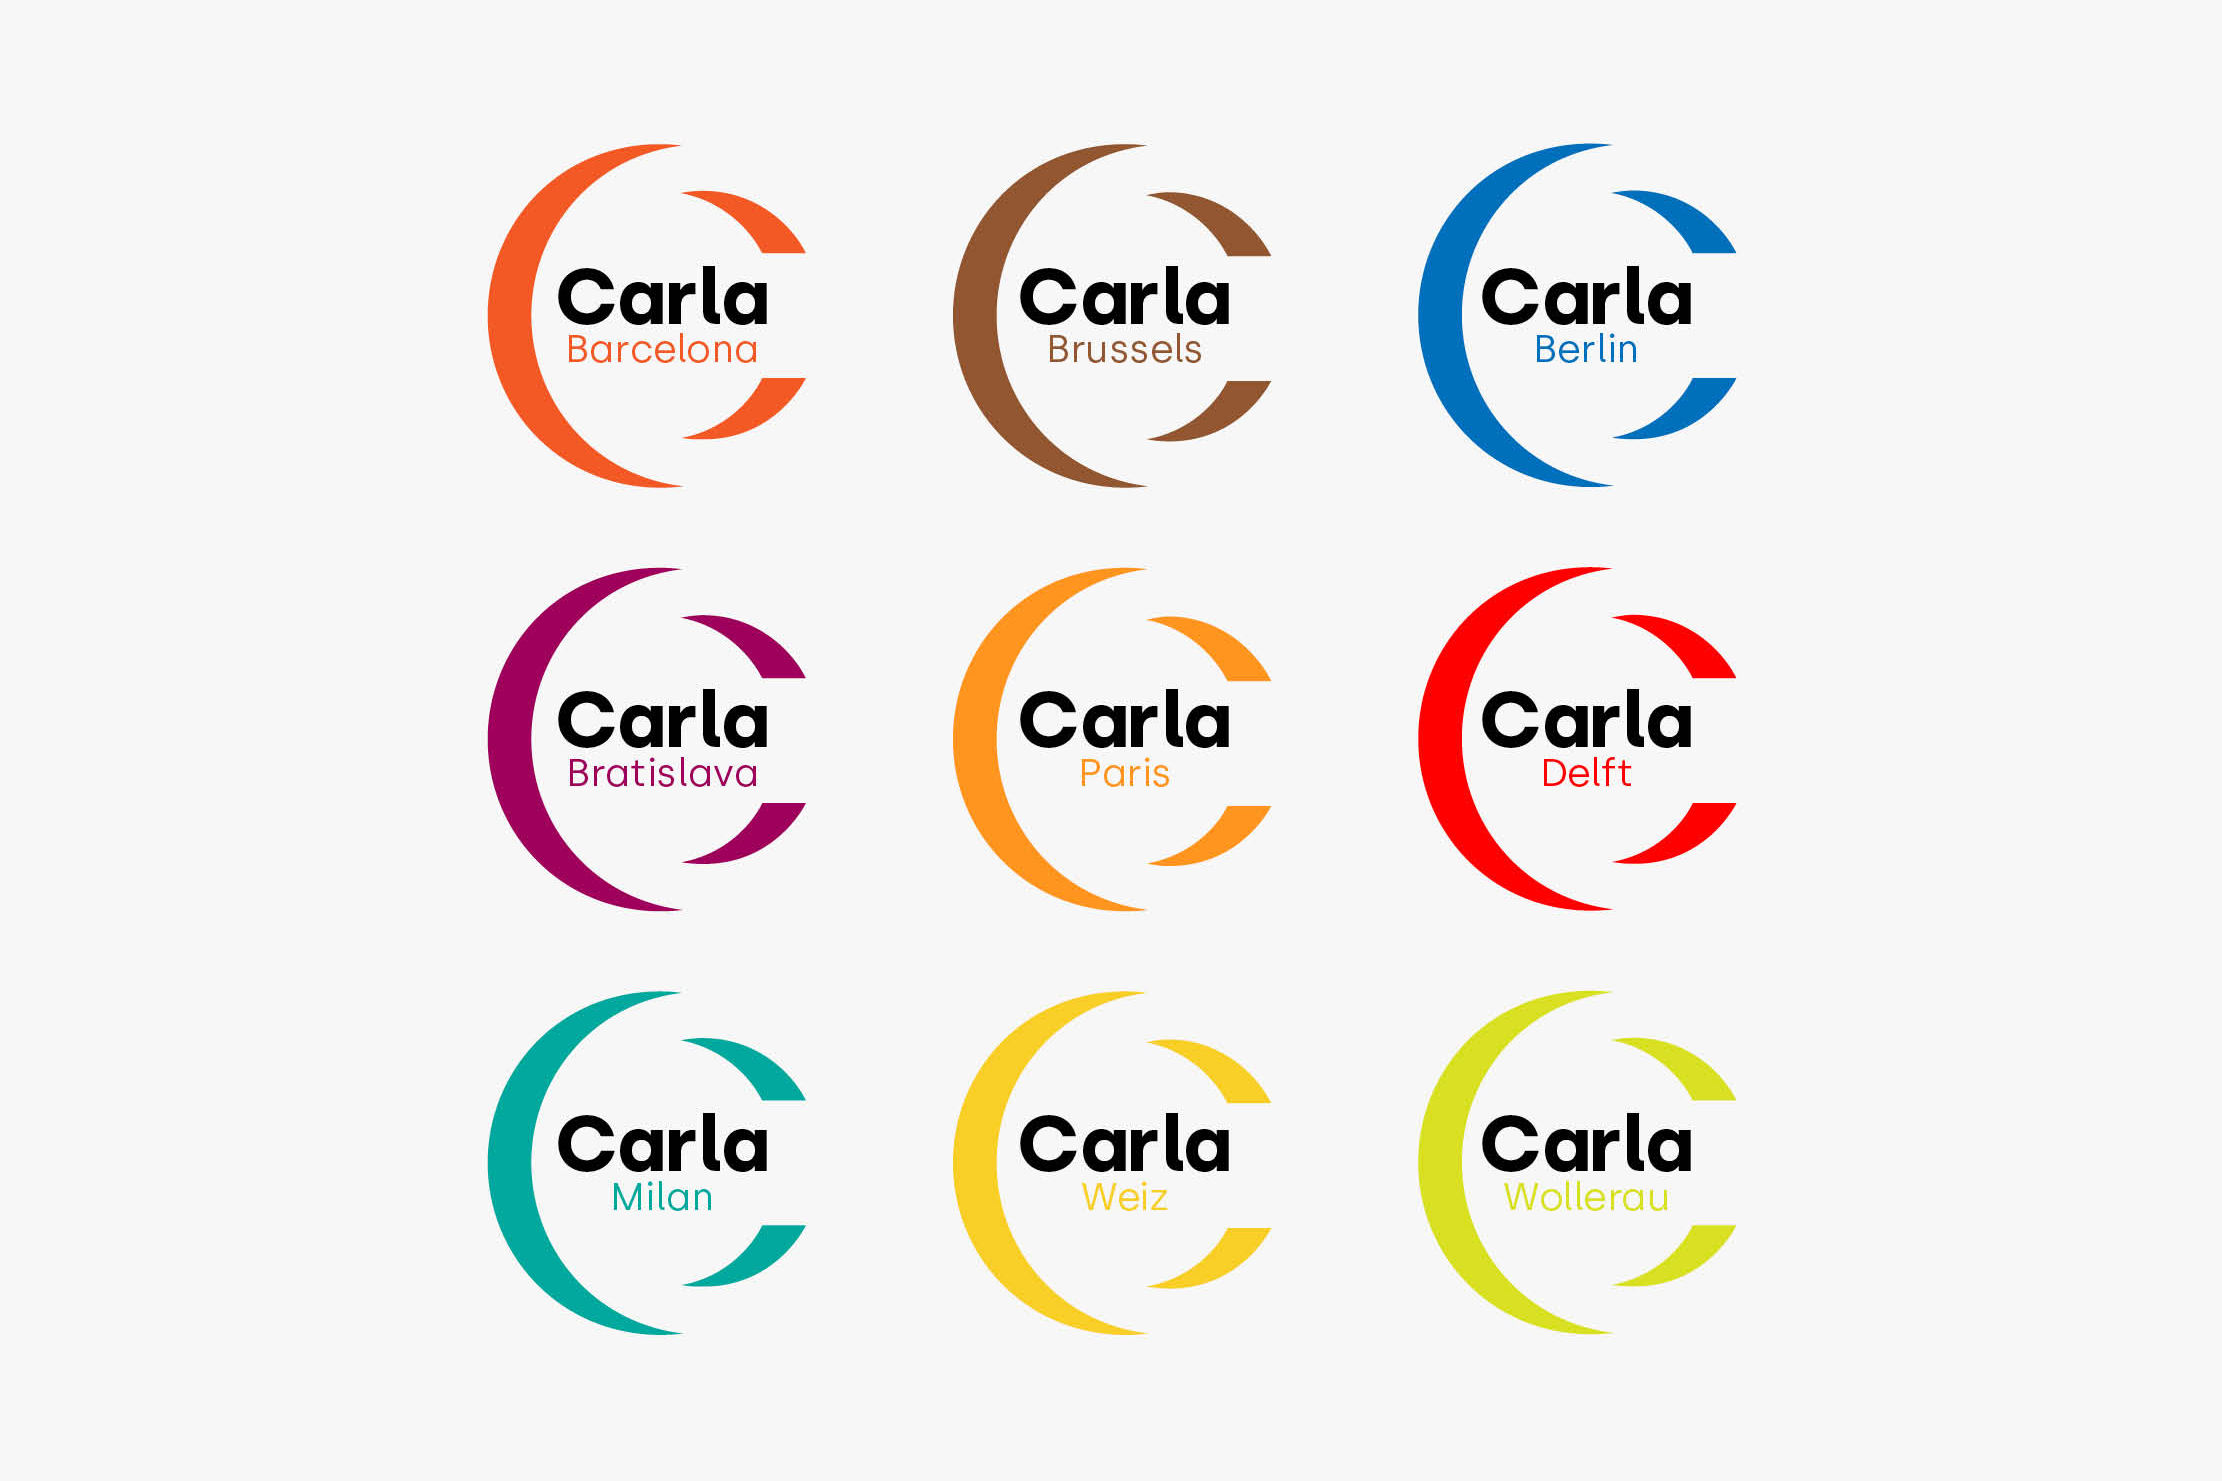 Carla_logos-cities-Daniel-Cavalcanti